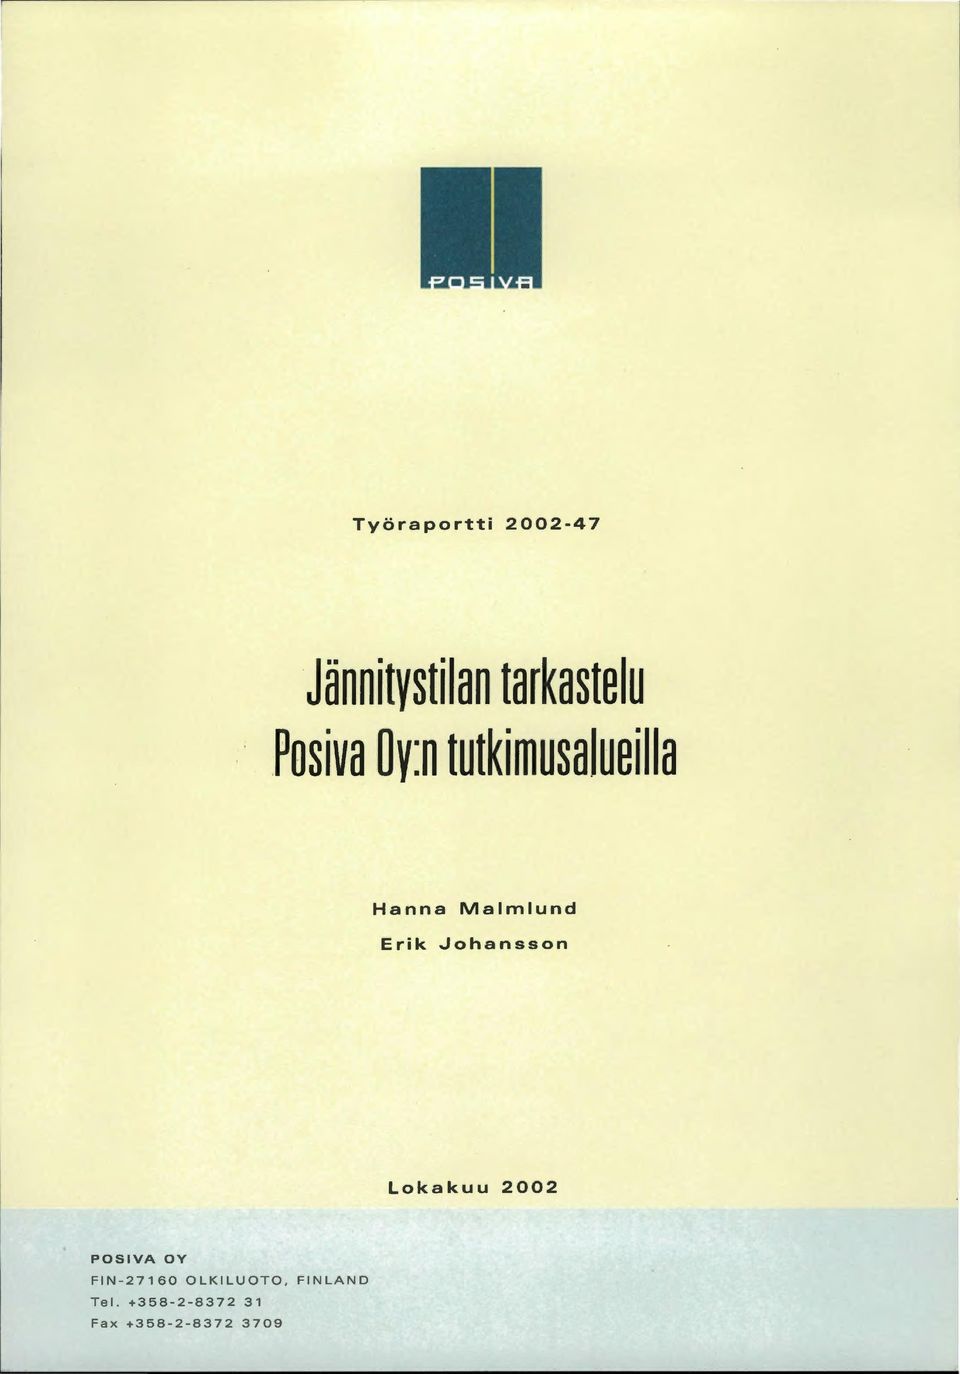 Johansson Lokakuu 2002 POSIVA OY FIN-27160